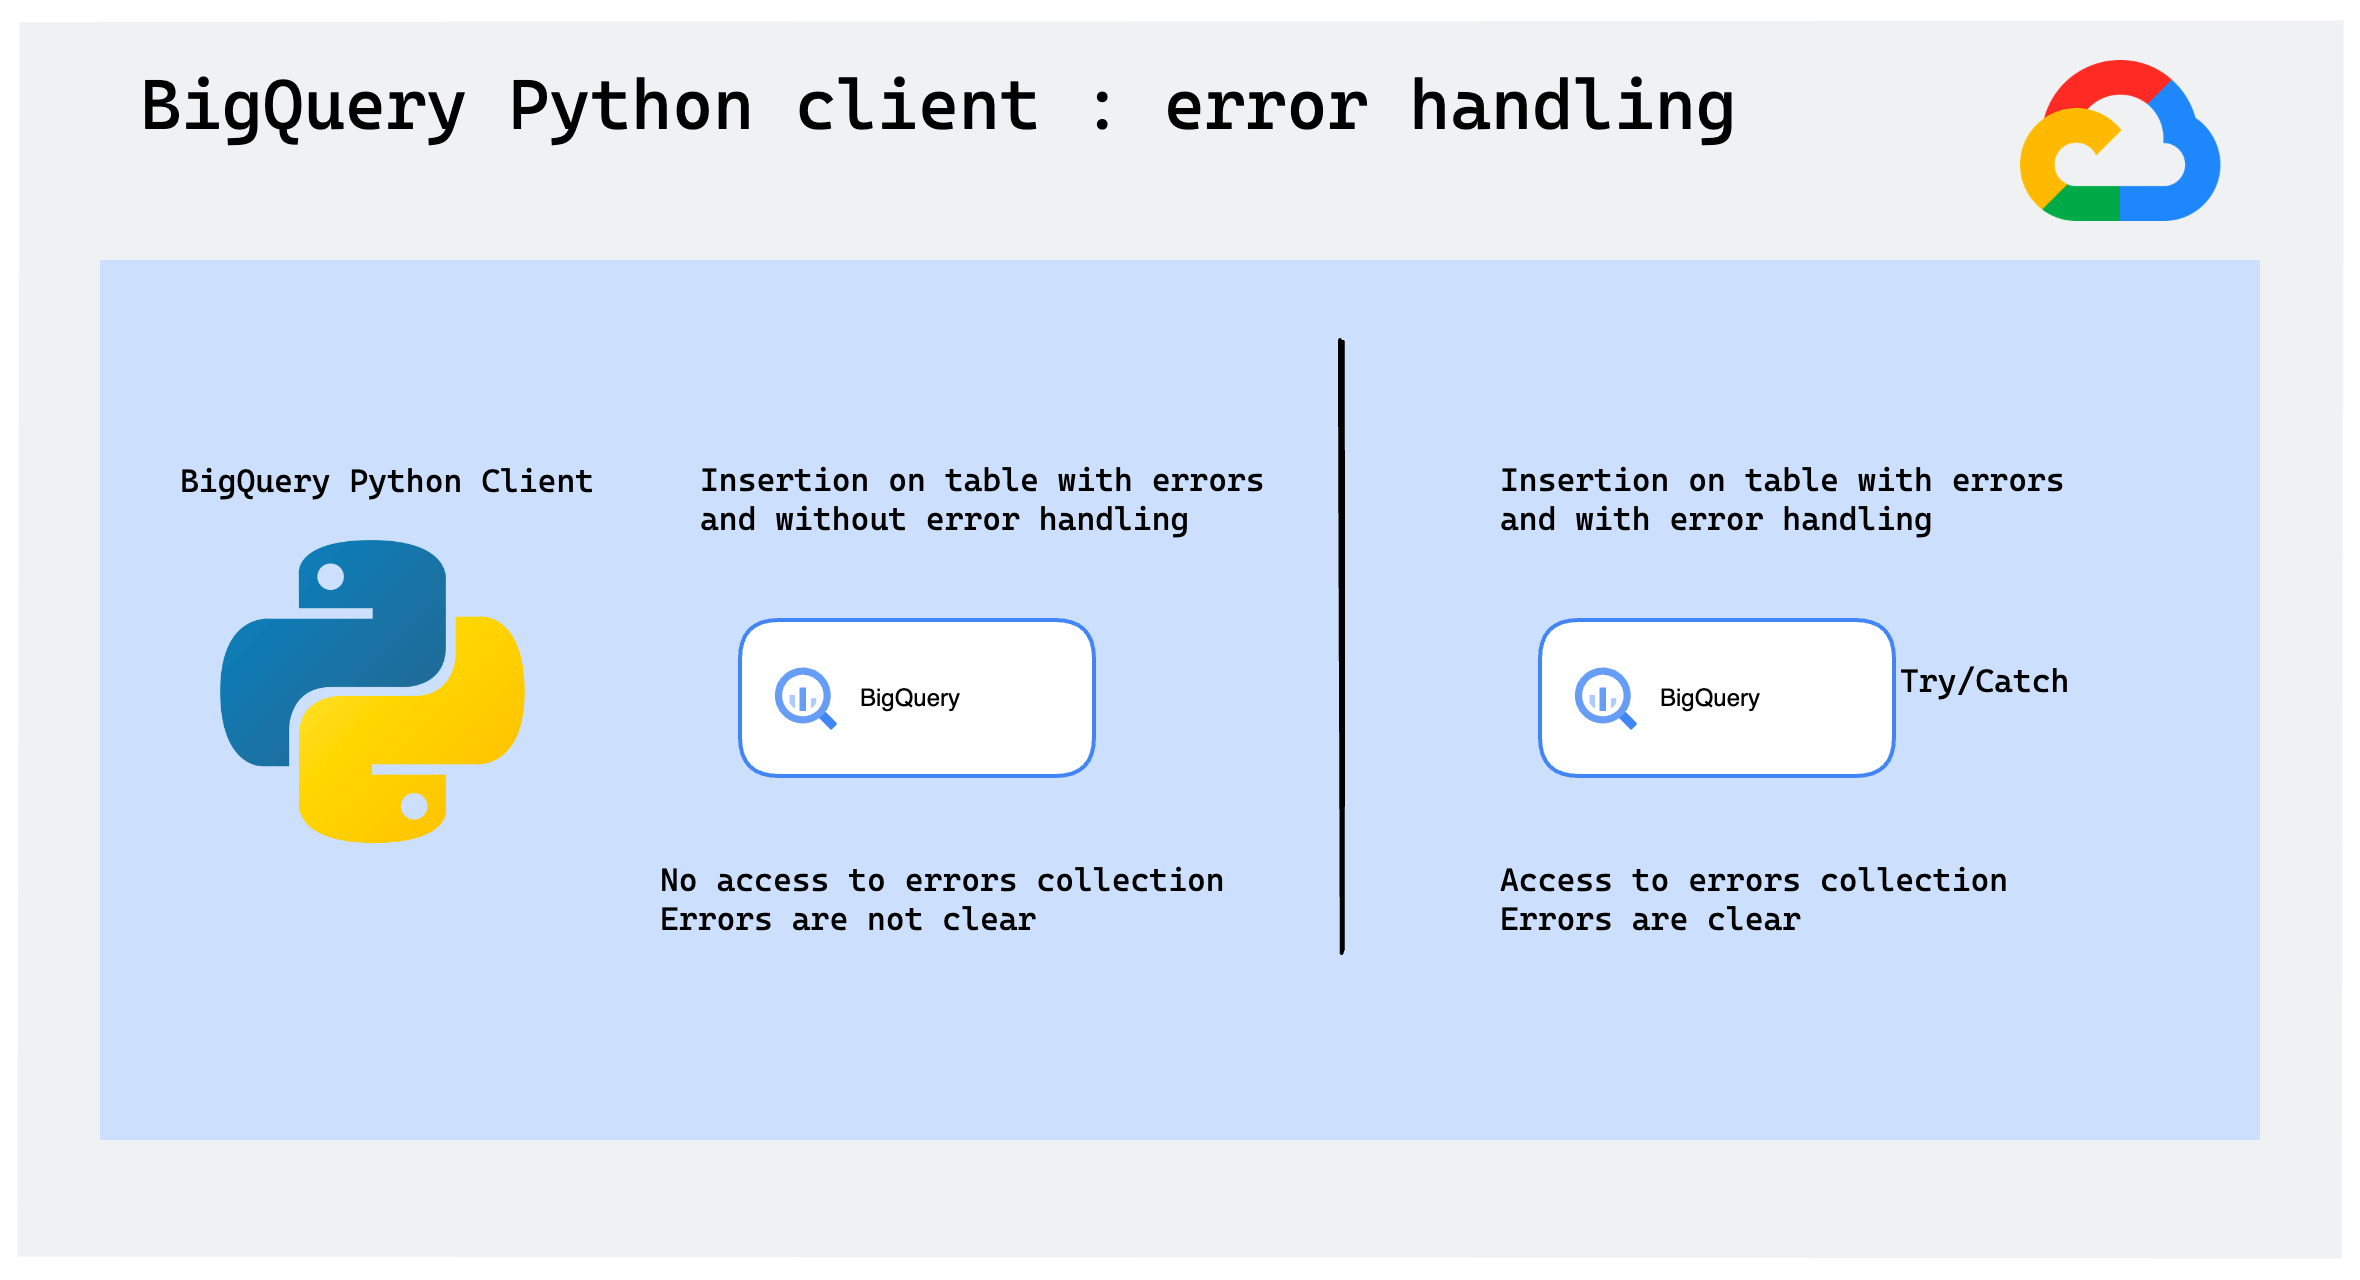 bq_python_client_error_handling.png